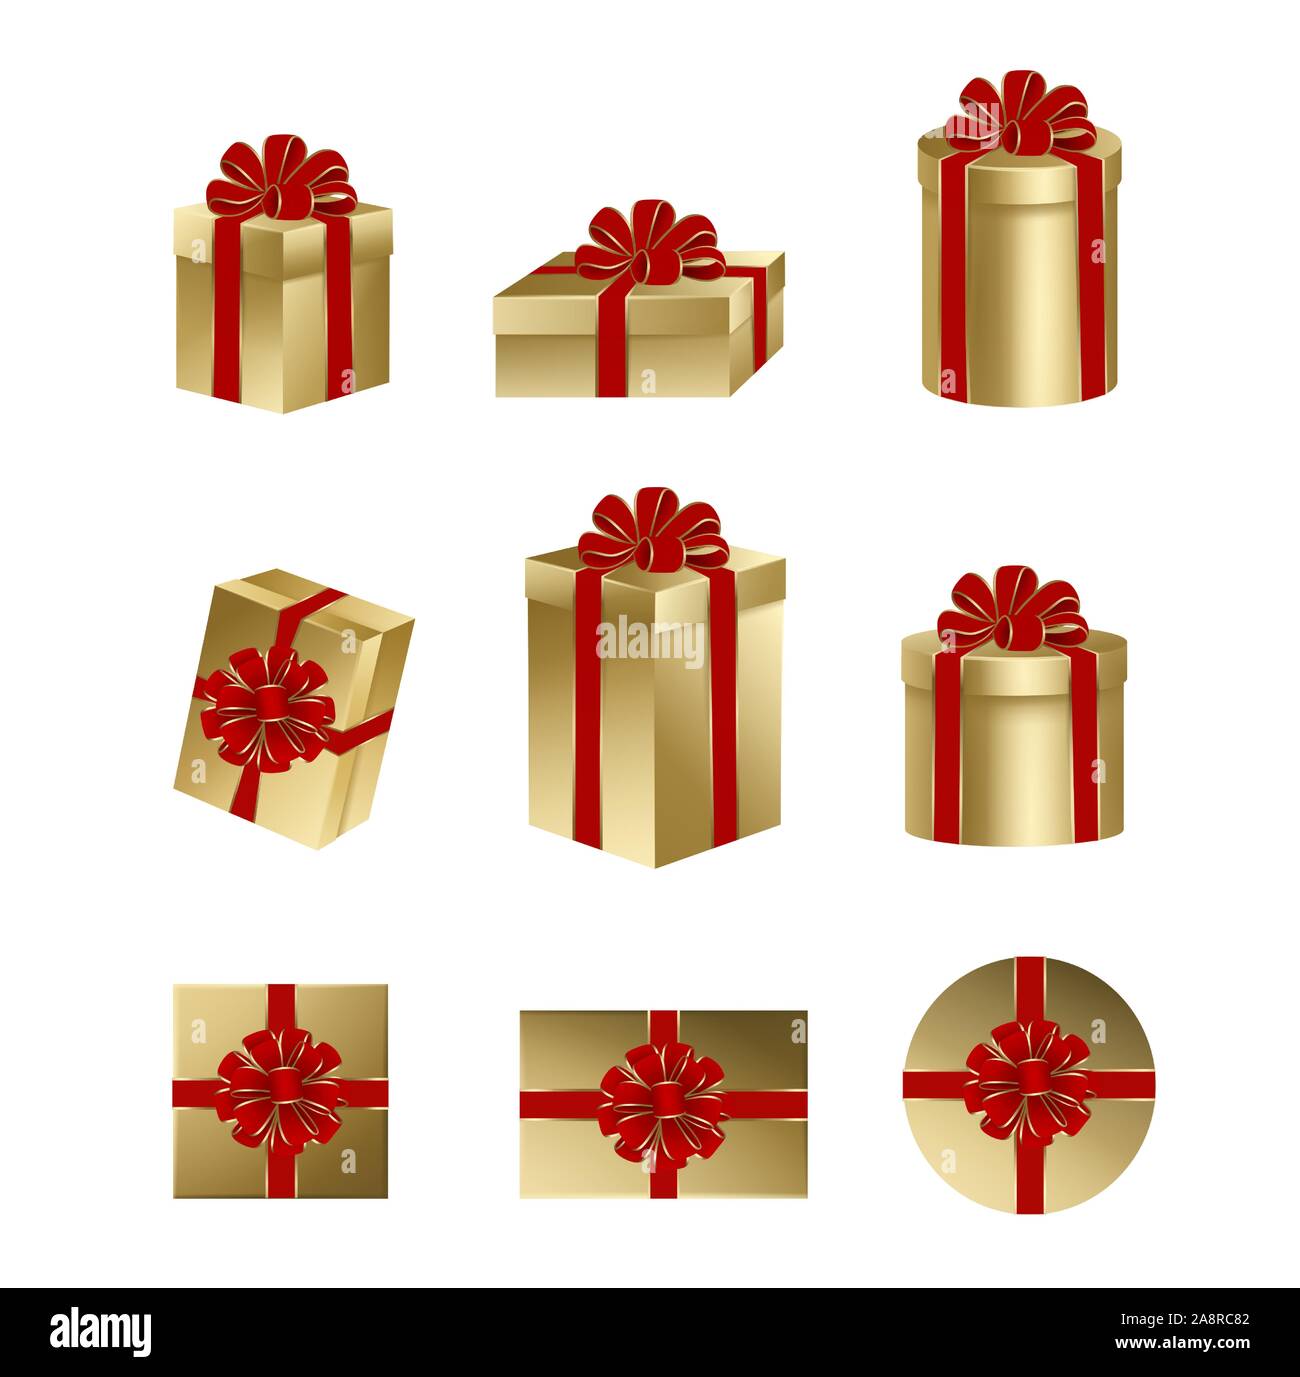 Isolierte gold Geschenkboxen mit roter Schleife und Farbband für Weihnachten und Geburtstag Dekorationen eingestellt Stock Vektor